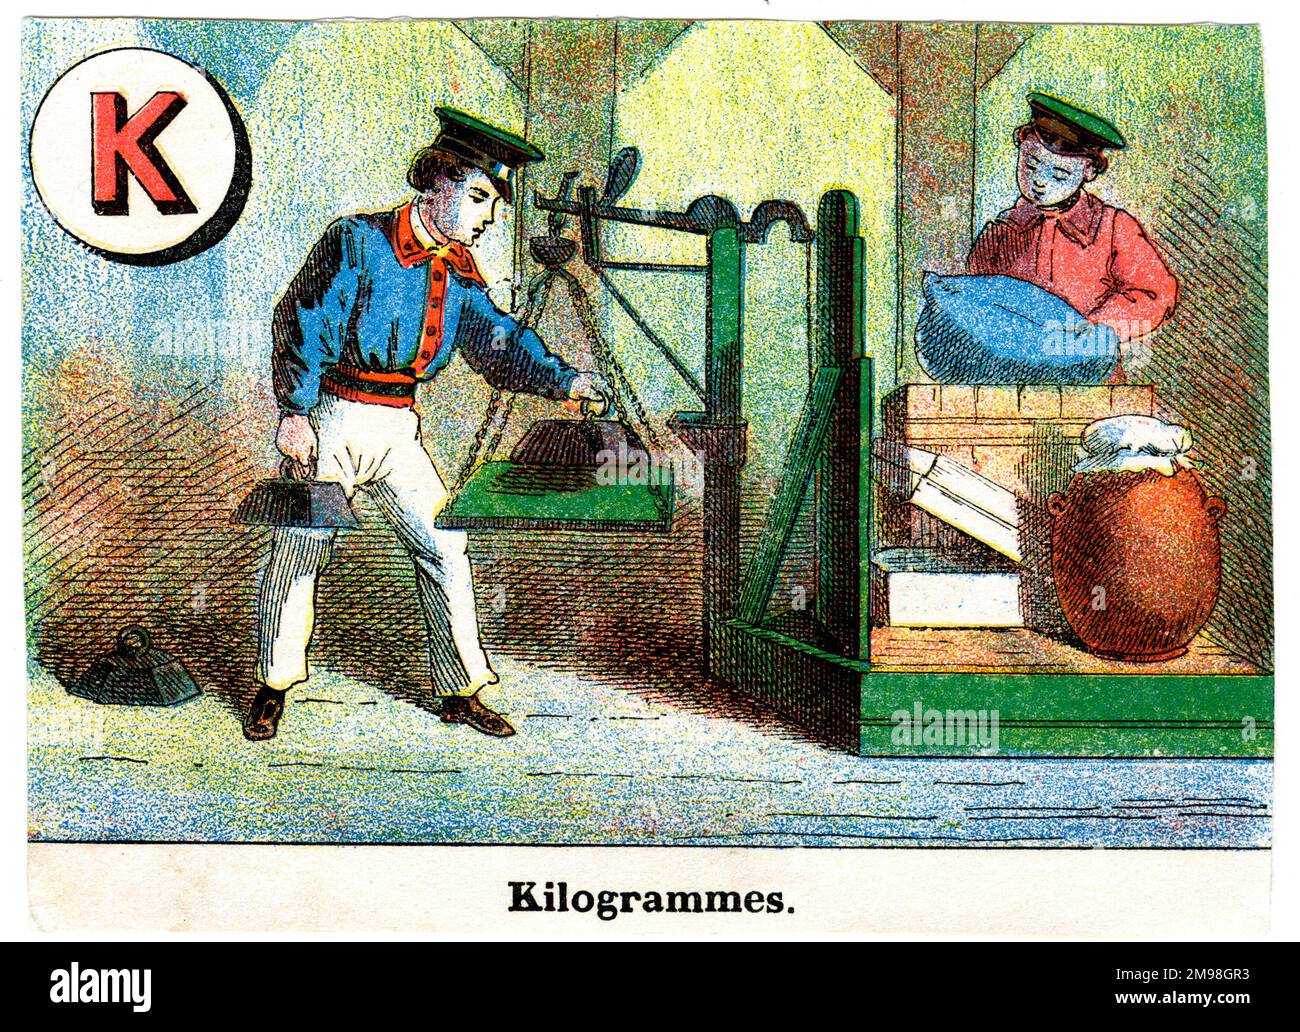 Alfabeto ferroviario francese - K per chilogrammi (chilogrammi). Foto Stock